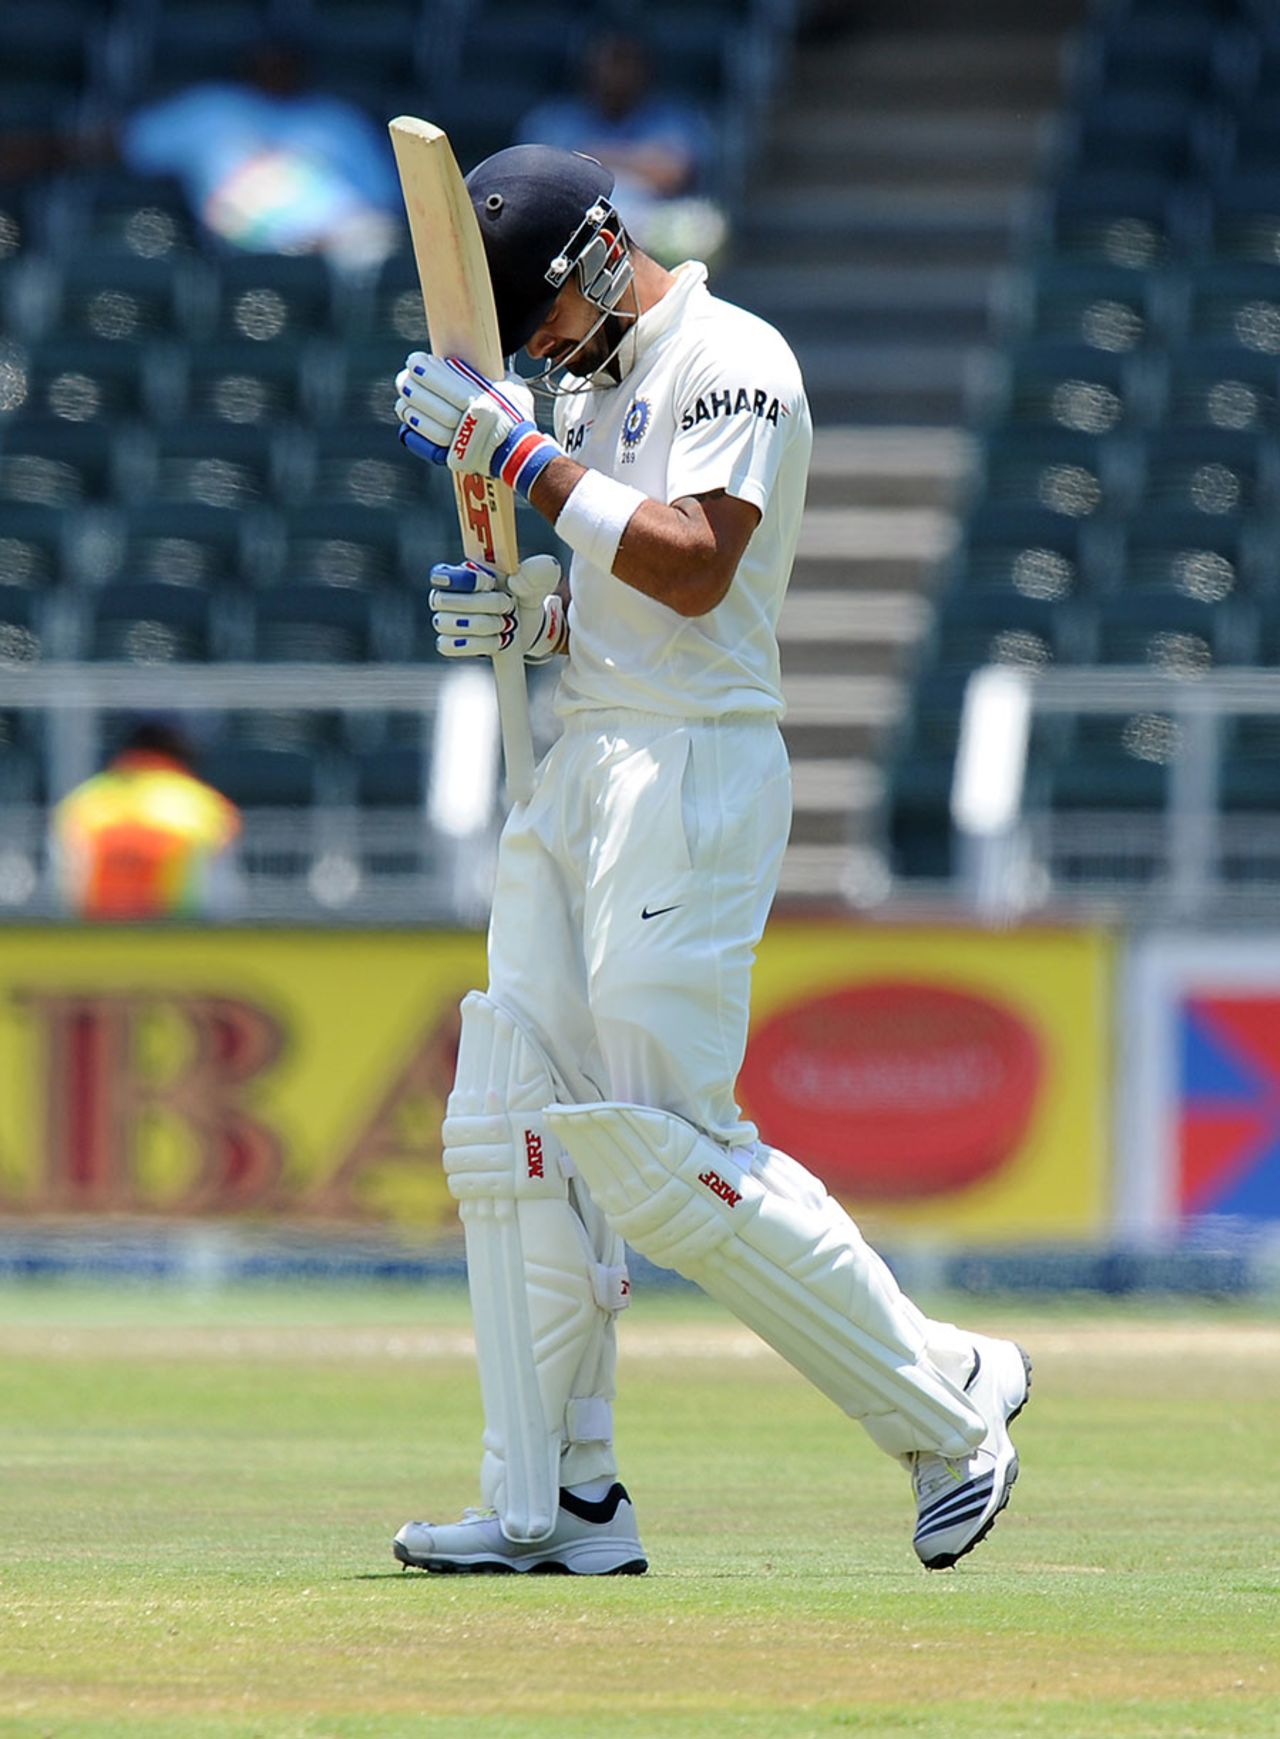 Virat Kohli walks off after being dismissed for 96, South Africa v India, 1st Test, Johannesburg, 4th day, December 21, 2013